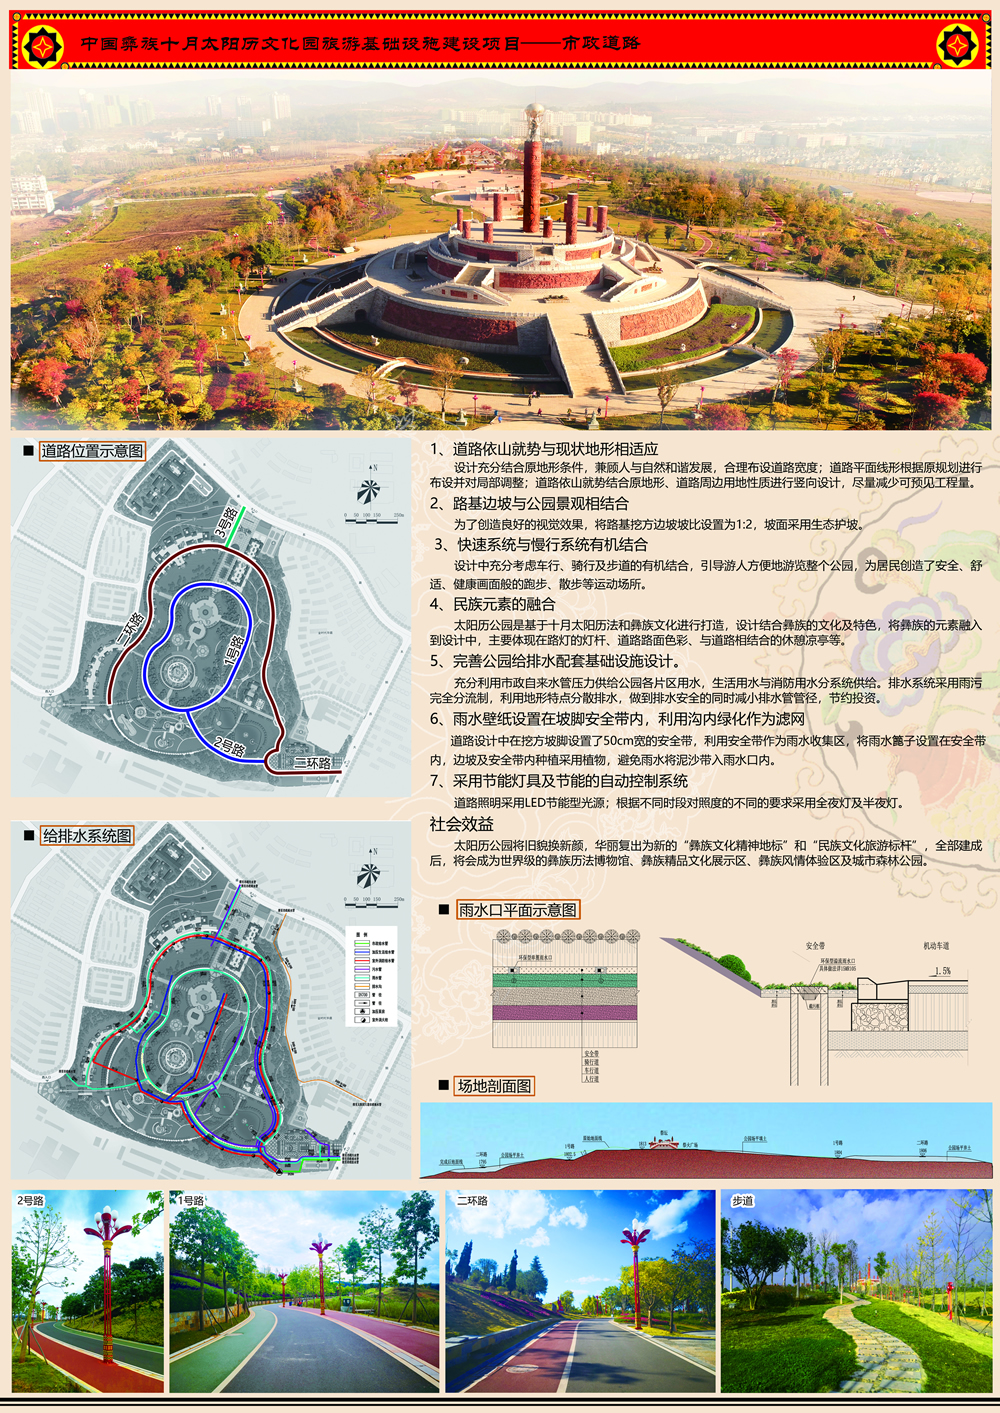 中国彝族十月太阳历公园旅游基础设施建设项目